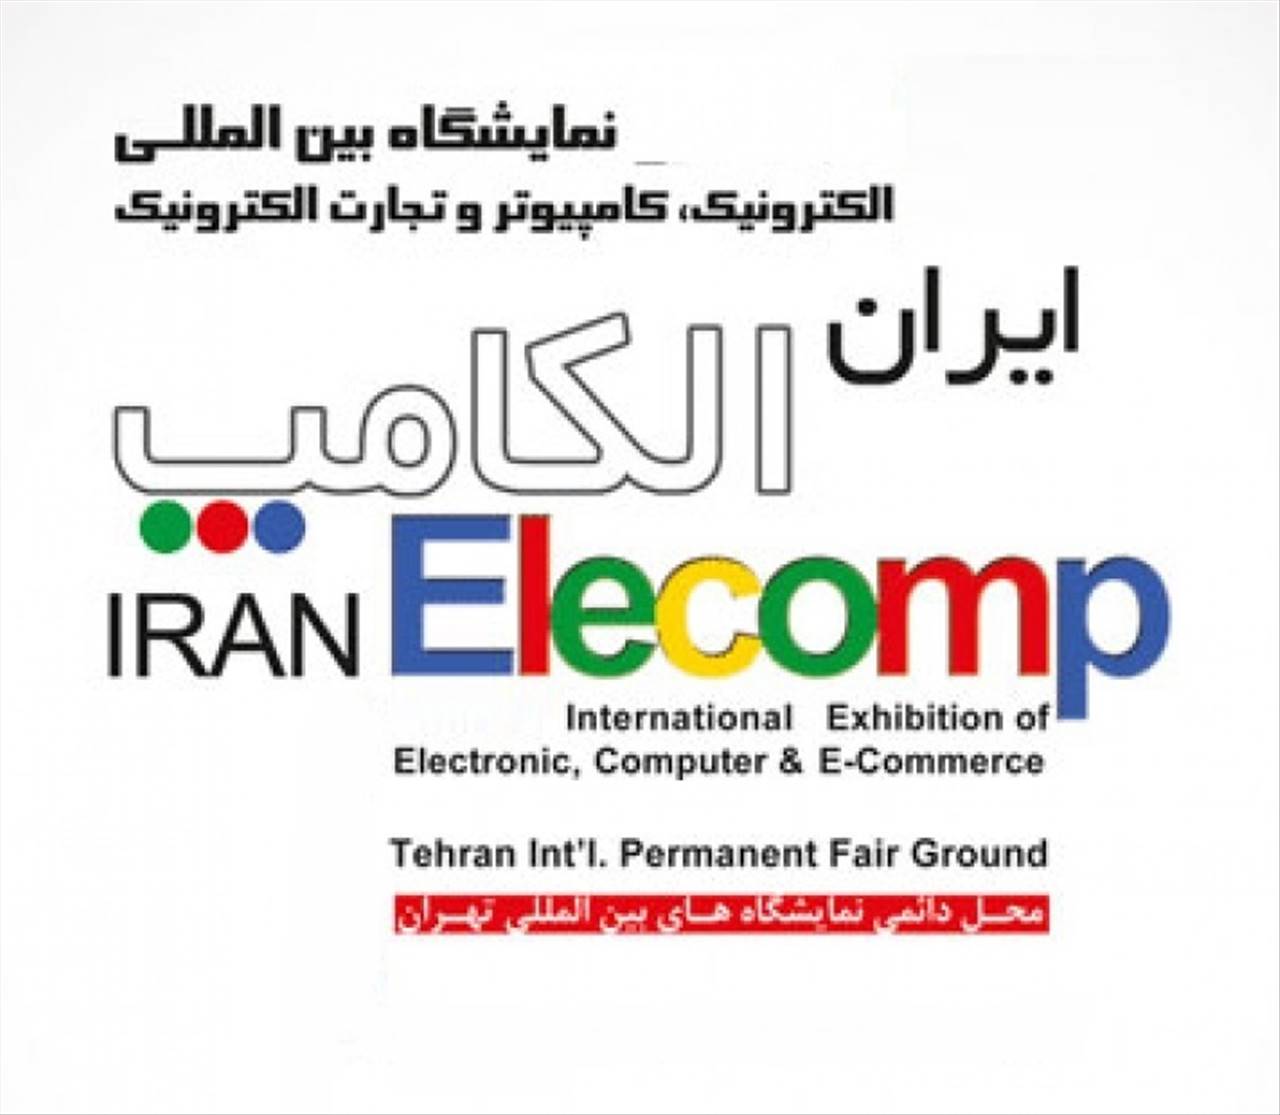 الکامپ بیست و چهارمین نمایشگاه بین المللی الکترونیک، کامپیوتر و تجارت الکترونیک